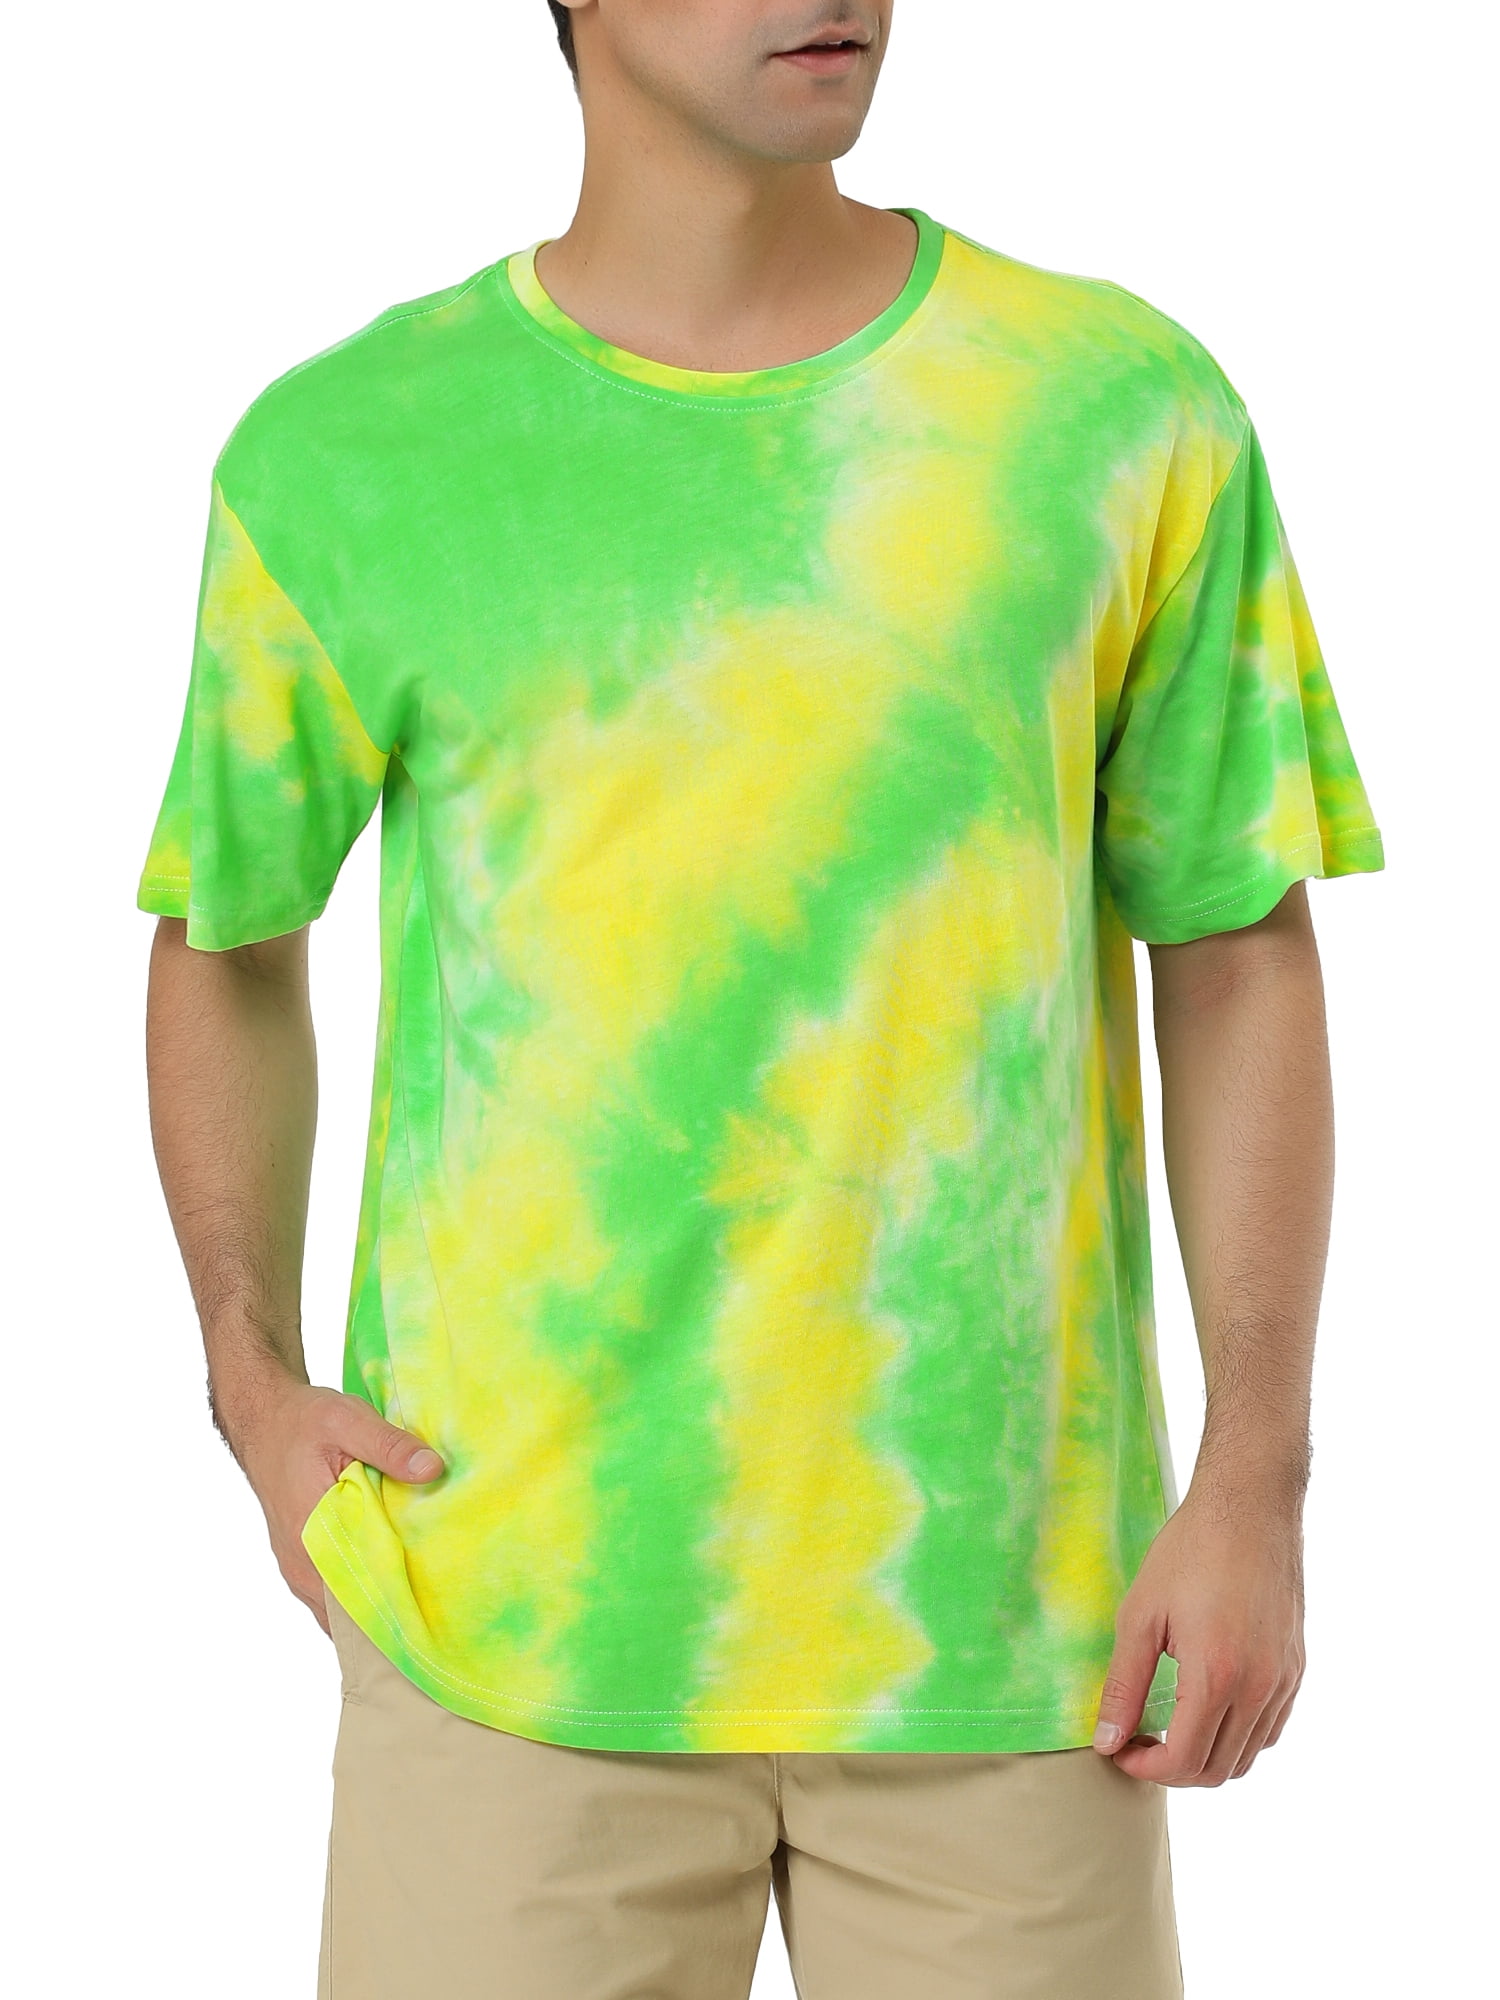 Lars Amadeus Men's Summer Tie Dye Tee Short Sleeves Hip Hop Printed T-Shirt